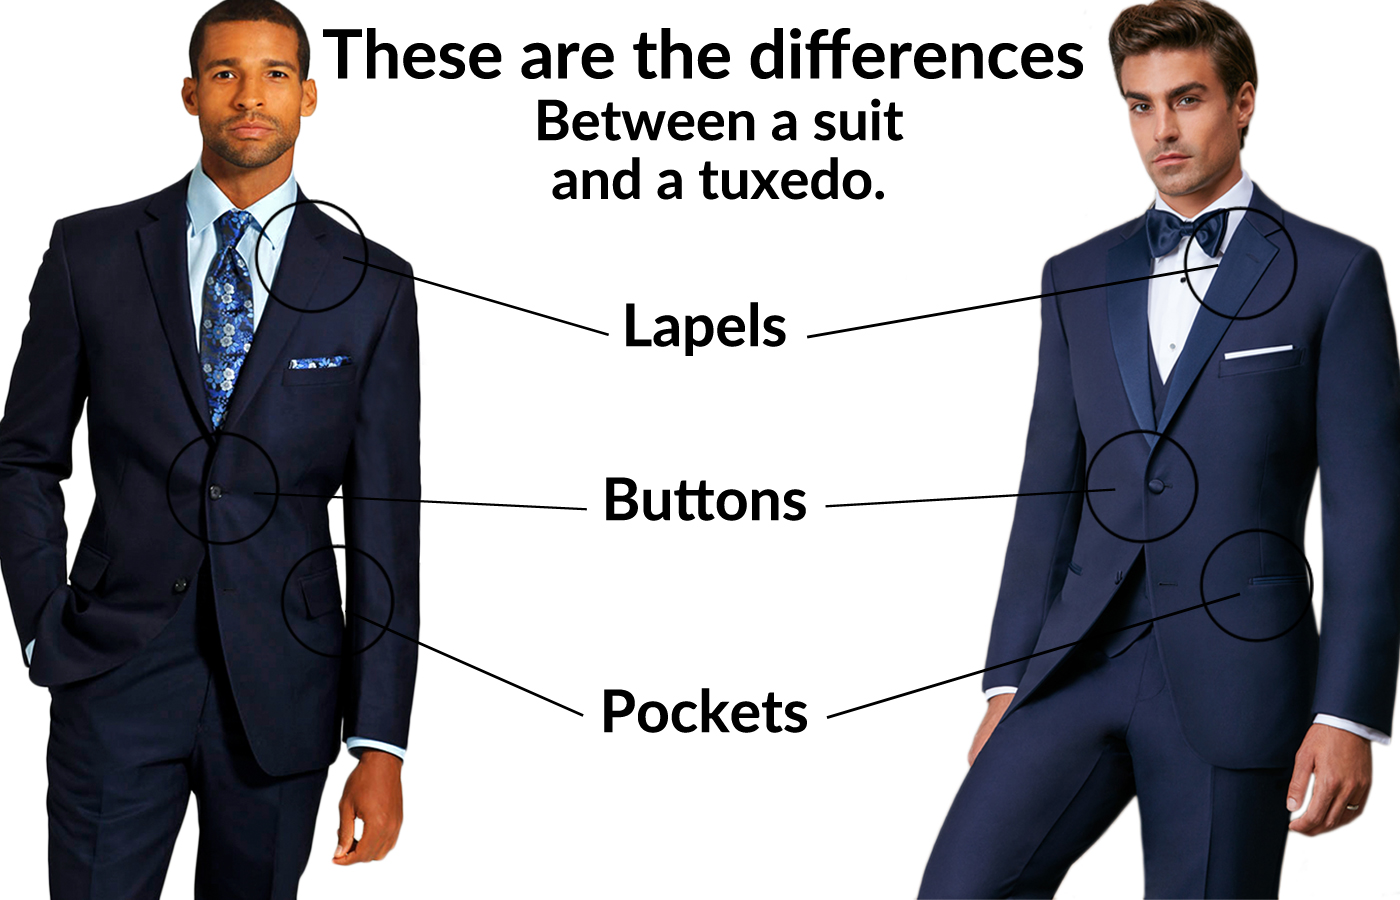 Suit or Tuxedo